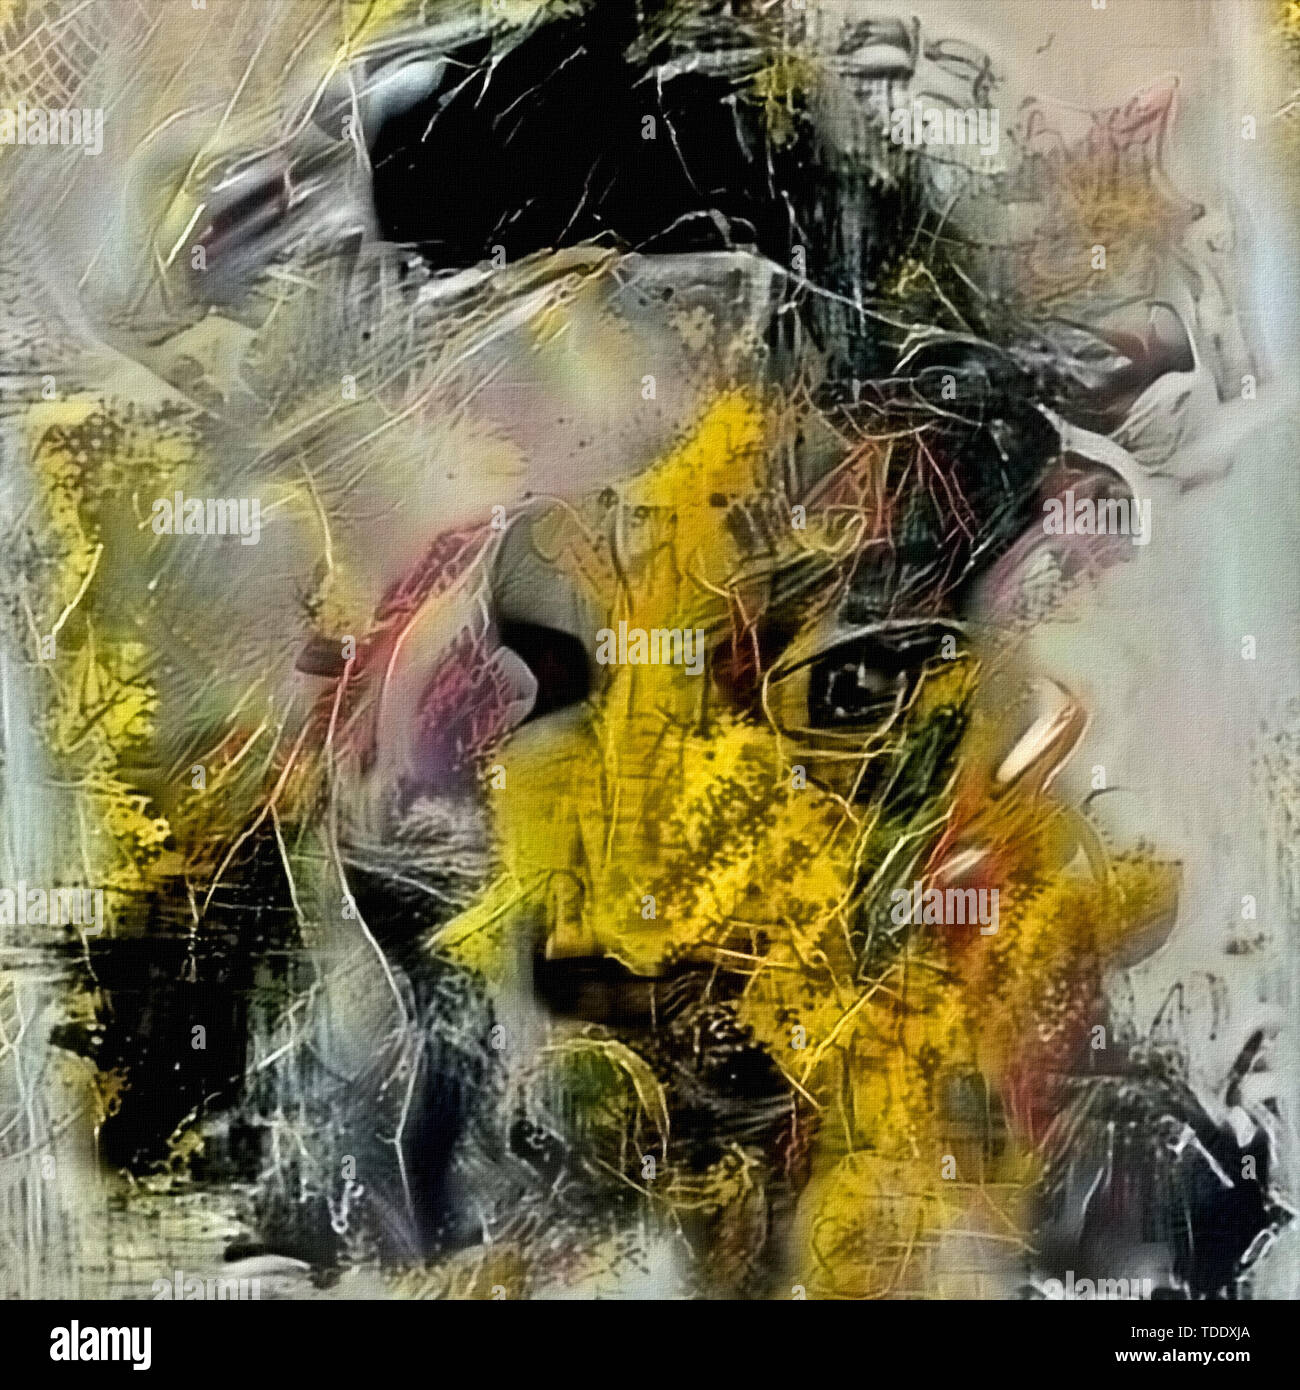 Original abstrakte digitale malerei des menschlichen gesichts, bunte  komposition in der zeitgenössischen modernen kunst, | CanStock